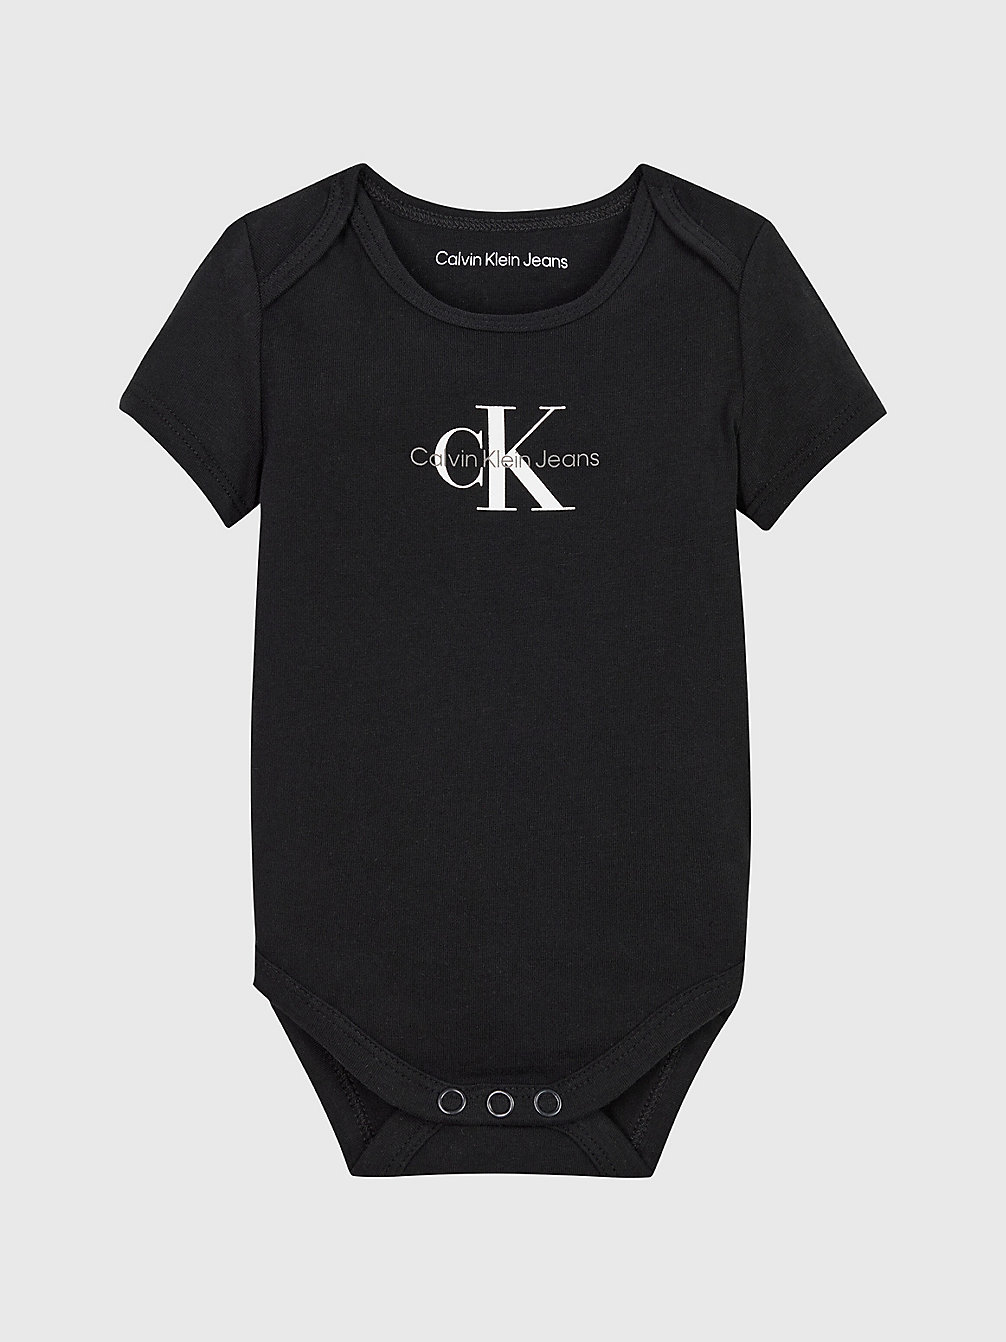 CK BLACK > Logo-Baby-Body > undefined newborn - Calvin Klein